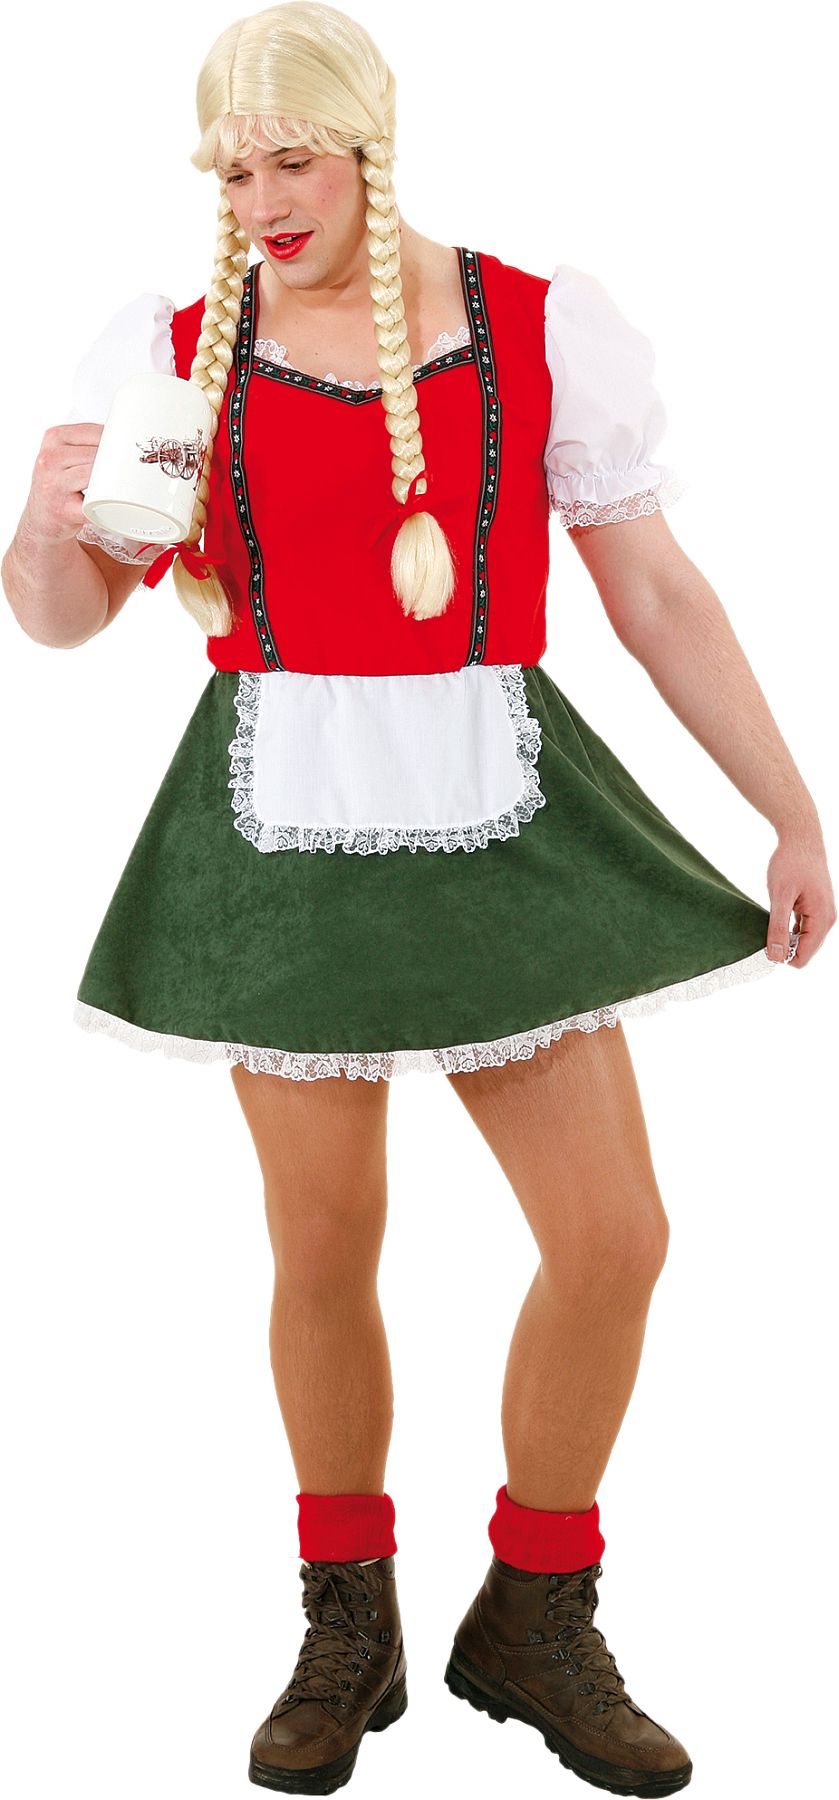 Dirndl ''Tyrolean costume'' for men